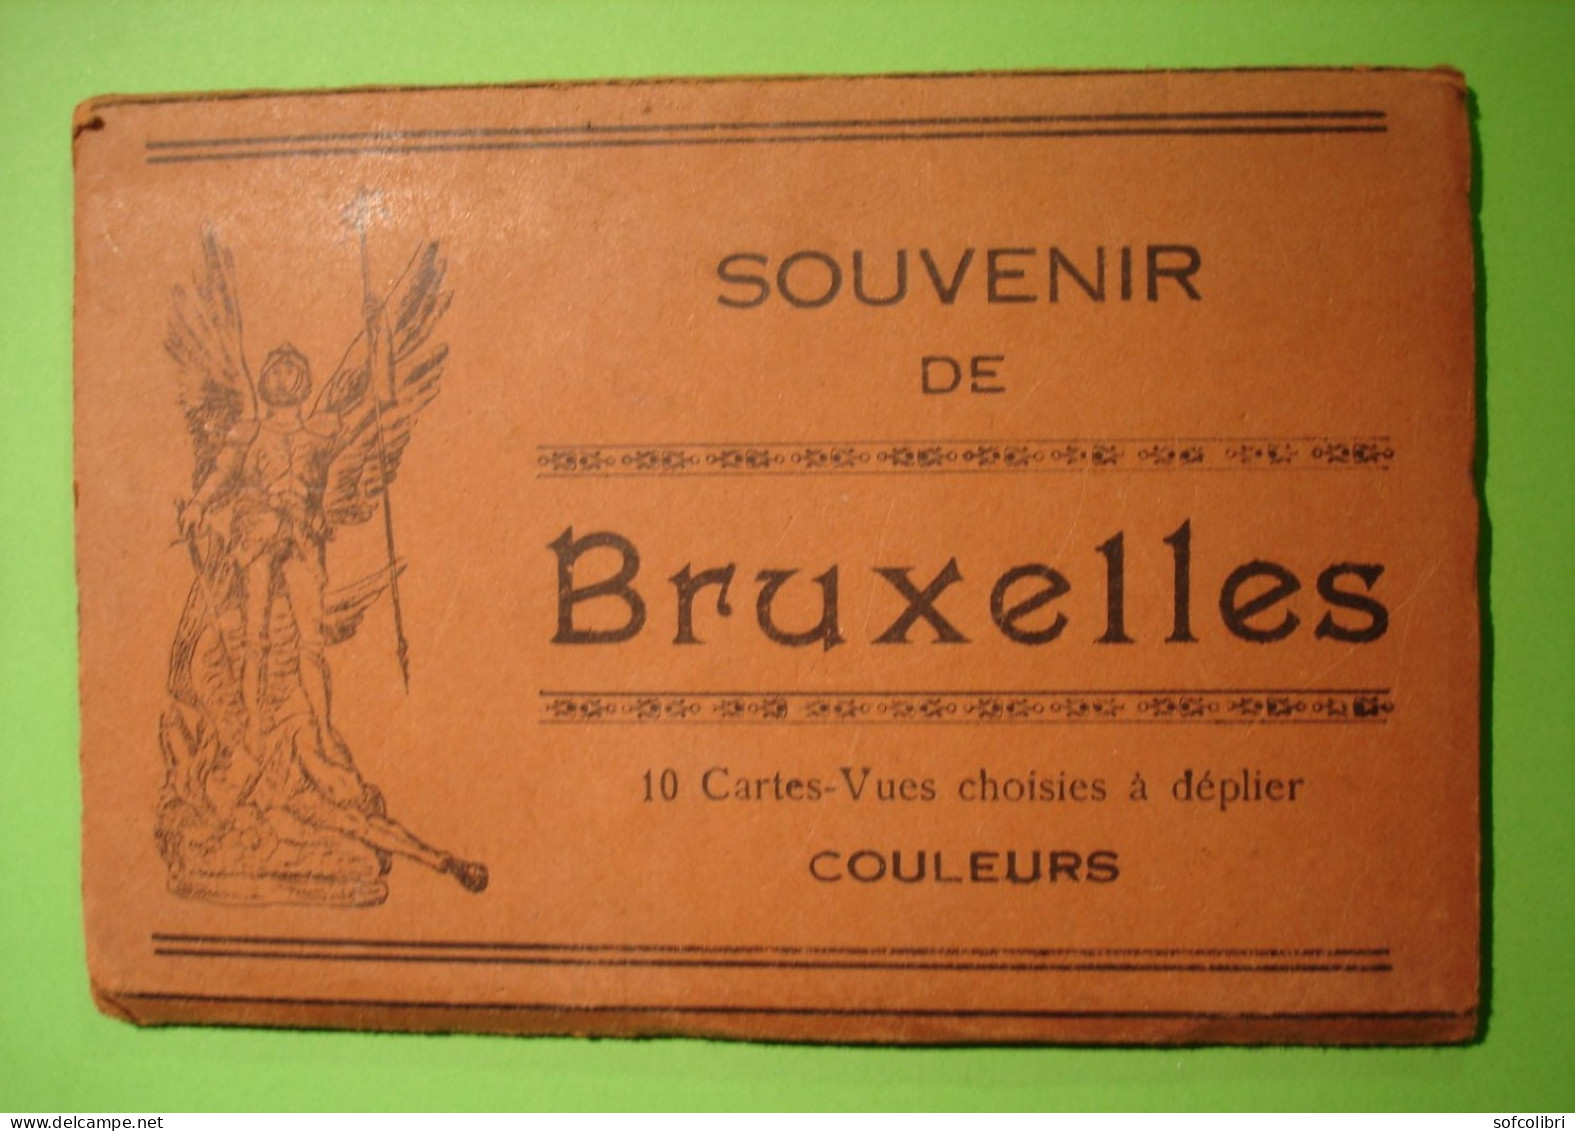 CARNET 10 CARTES - SOUVENIR DE BRUXELLES - Série 1 - Sets And Collections